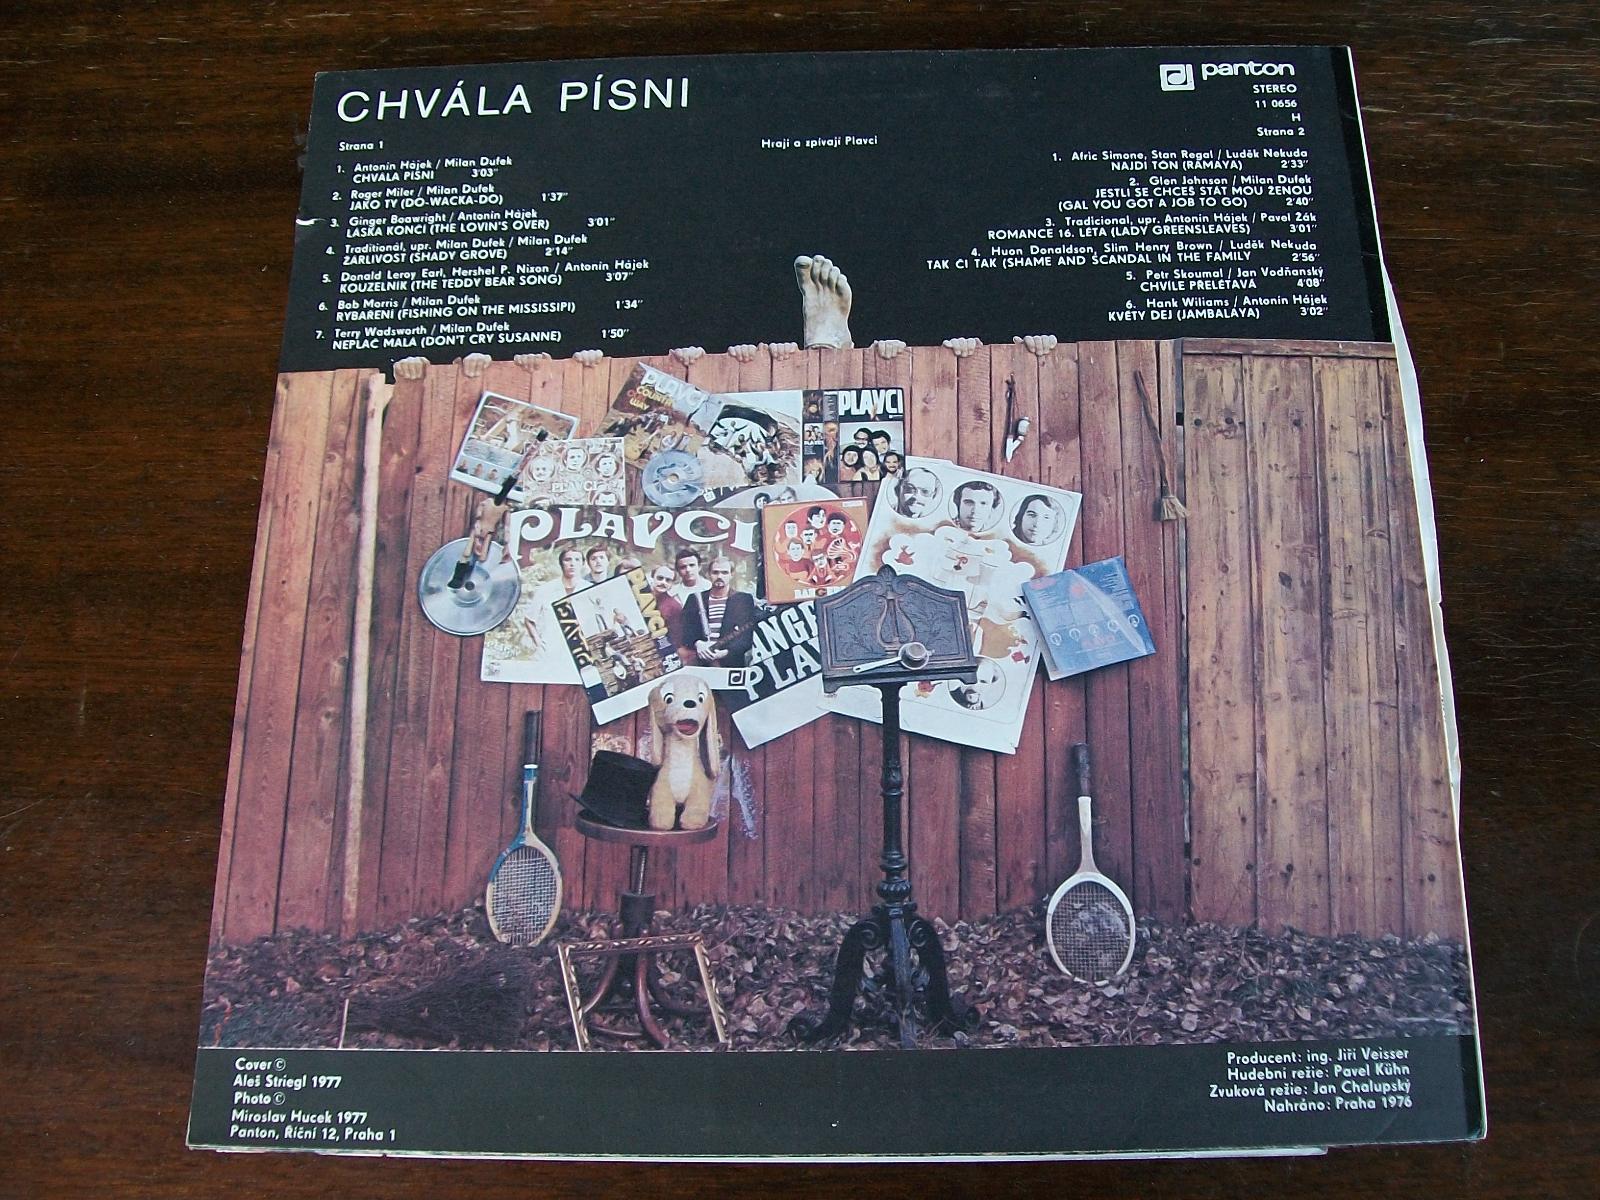 Plavci - Chvála písni, 1977, Panton - Hudba